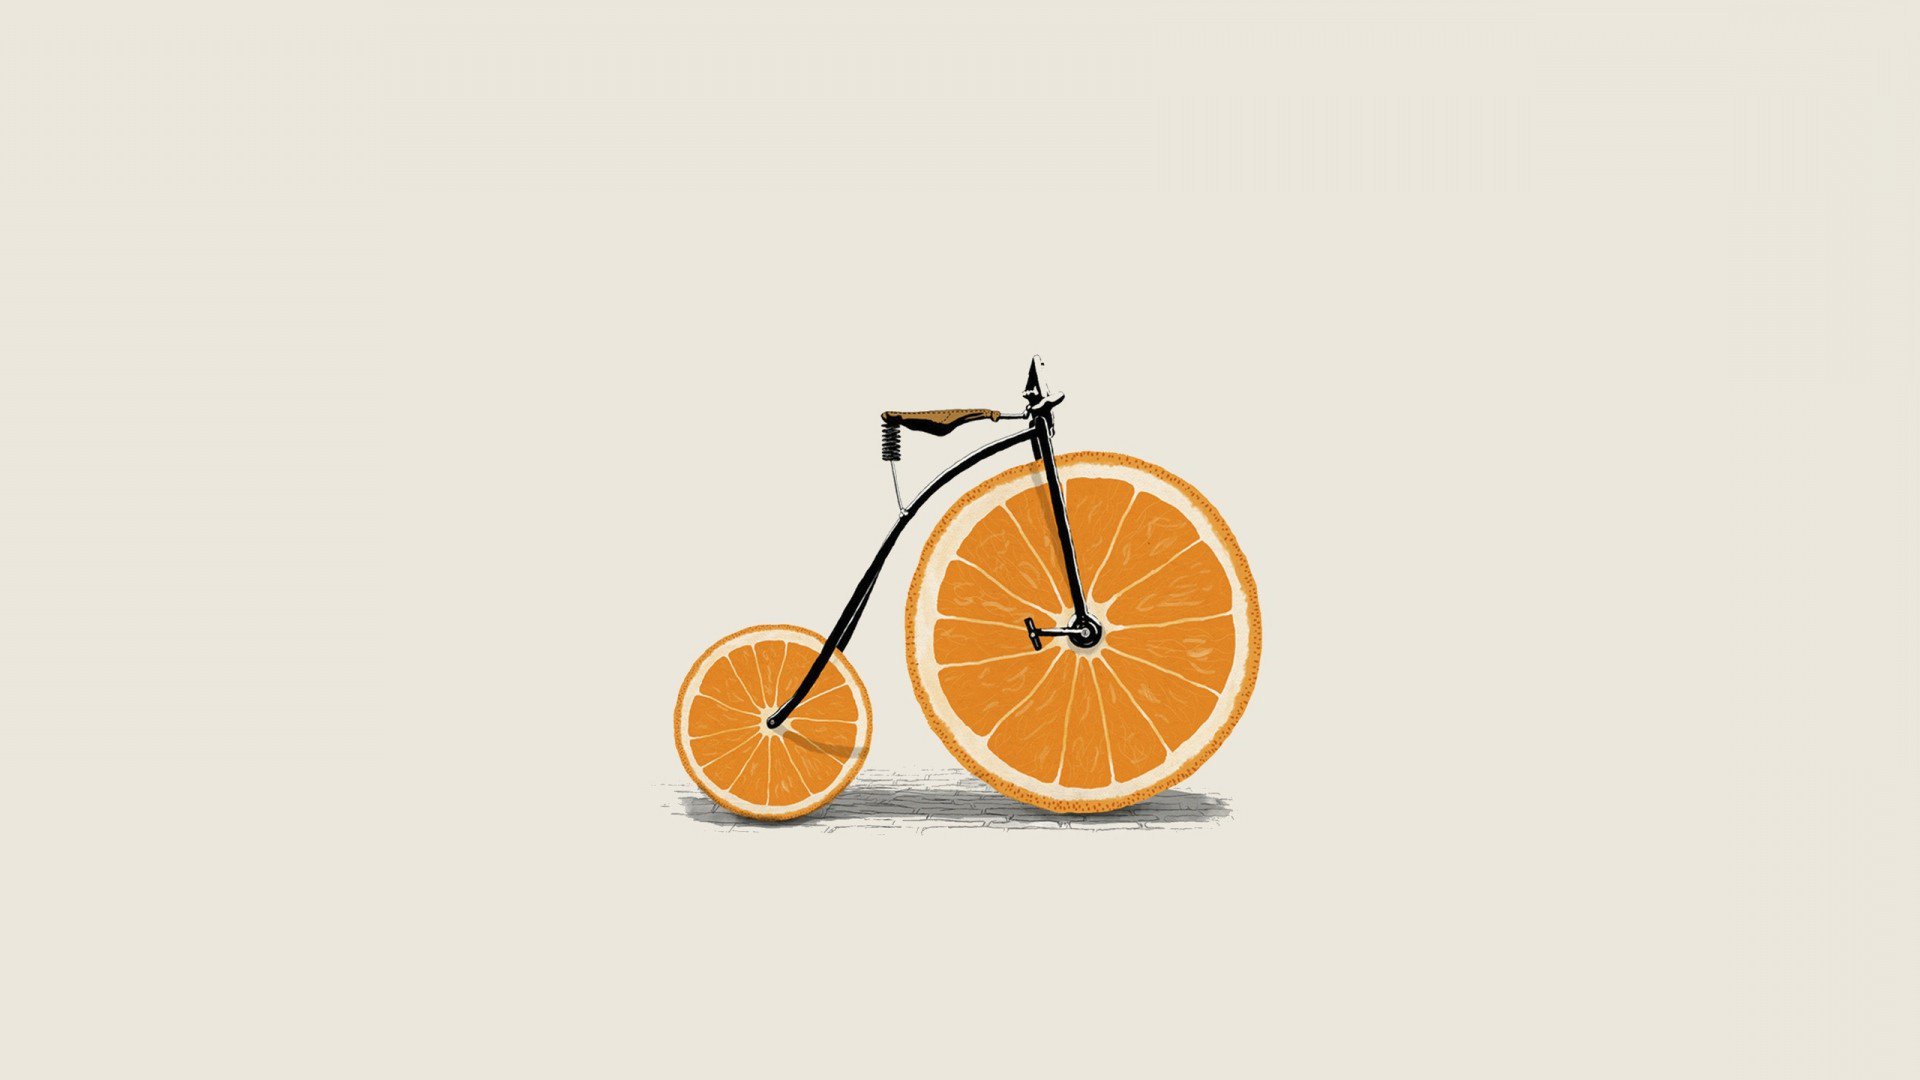 Фото велосипед минимализм художник - бесплатные картинки на Fonwall